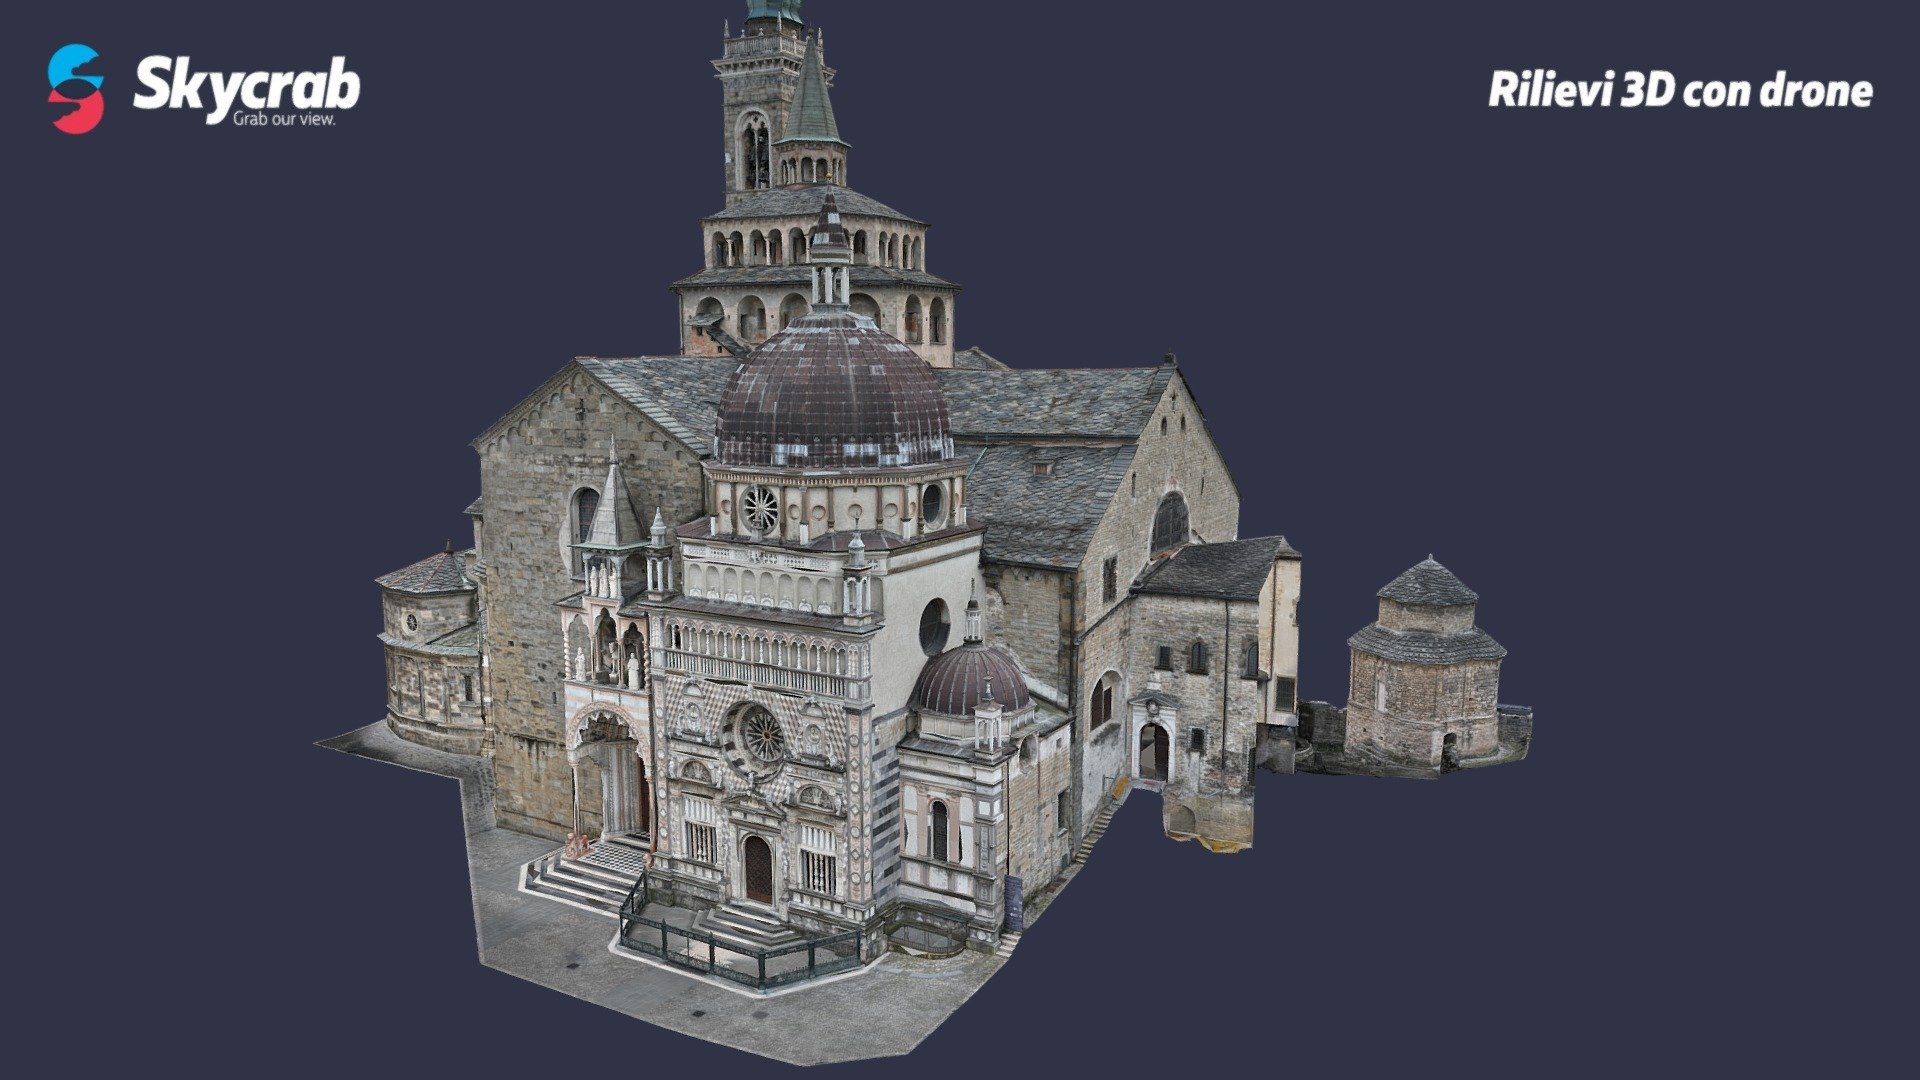 Rilievo 3D fotogrammetrico con drone DJI Mavic 3 Enteprise RTK della Basilica di Santa Maria Maggiore situata in Città Alta, Bergamo.

Info@skycrab.net - Basilica Santa Maria Maggiore - Città Alta (BG) - 3D model by Federico Risi (@Skycrab) 3d model